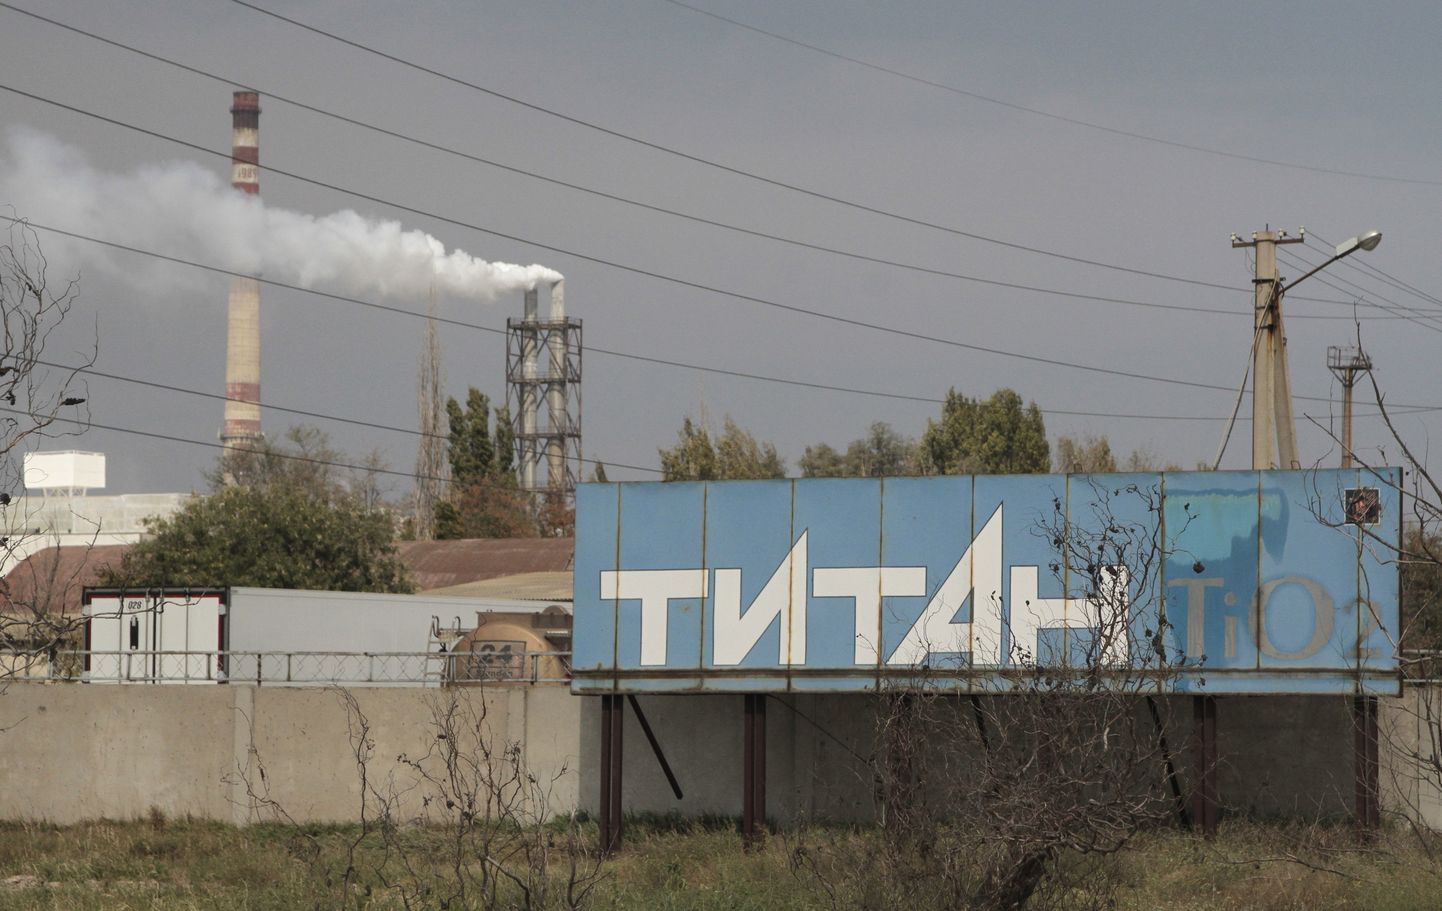 Rūpnīca "Krimas titāns" Armjanskā